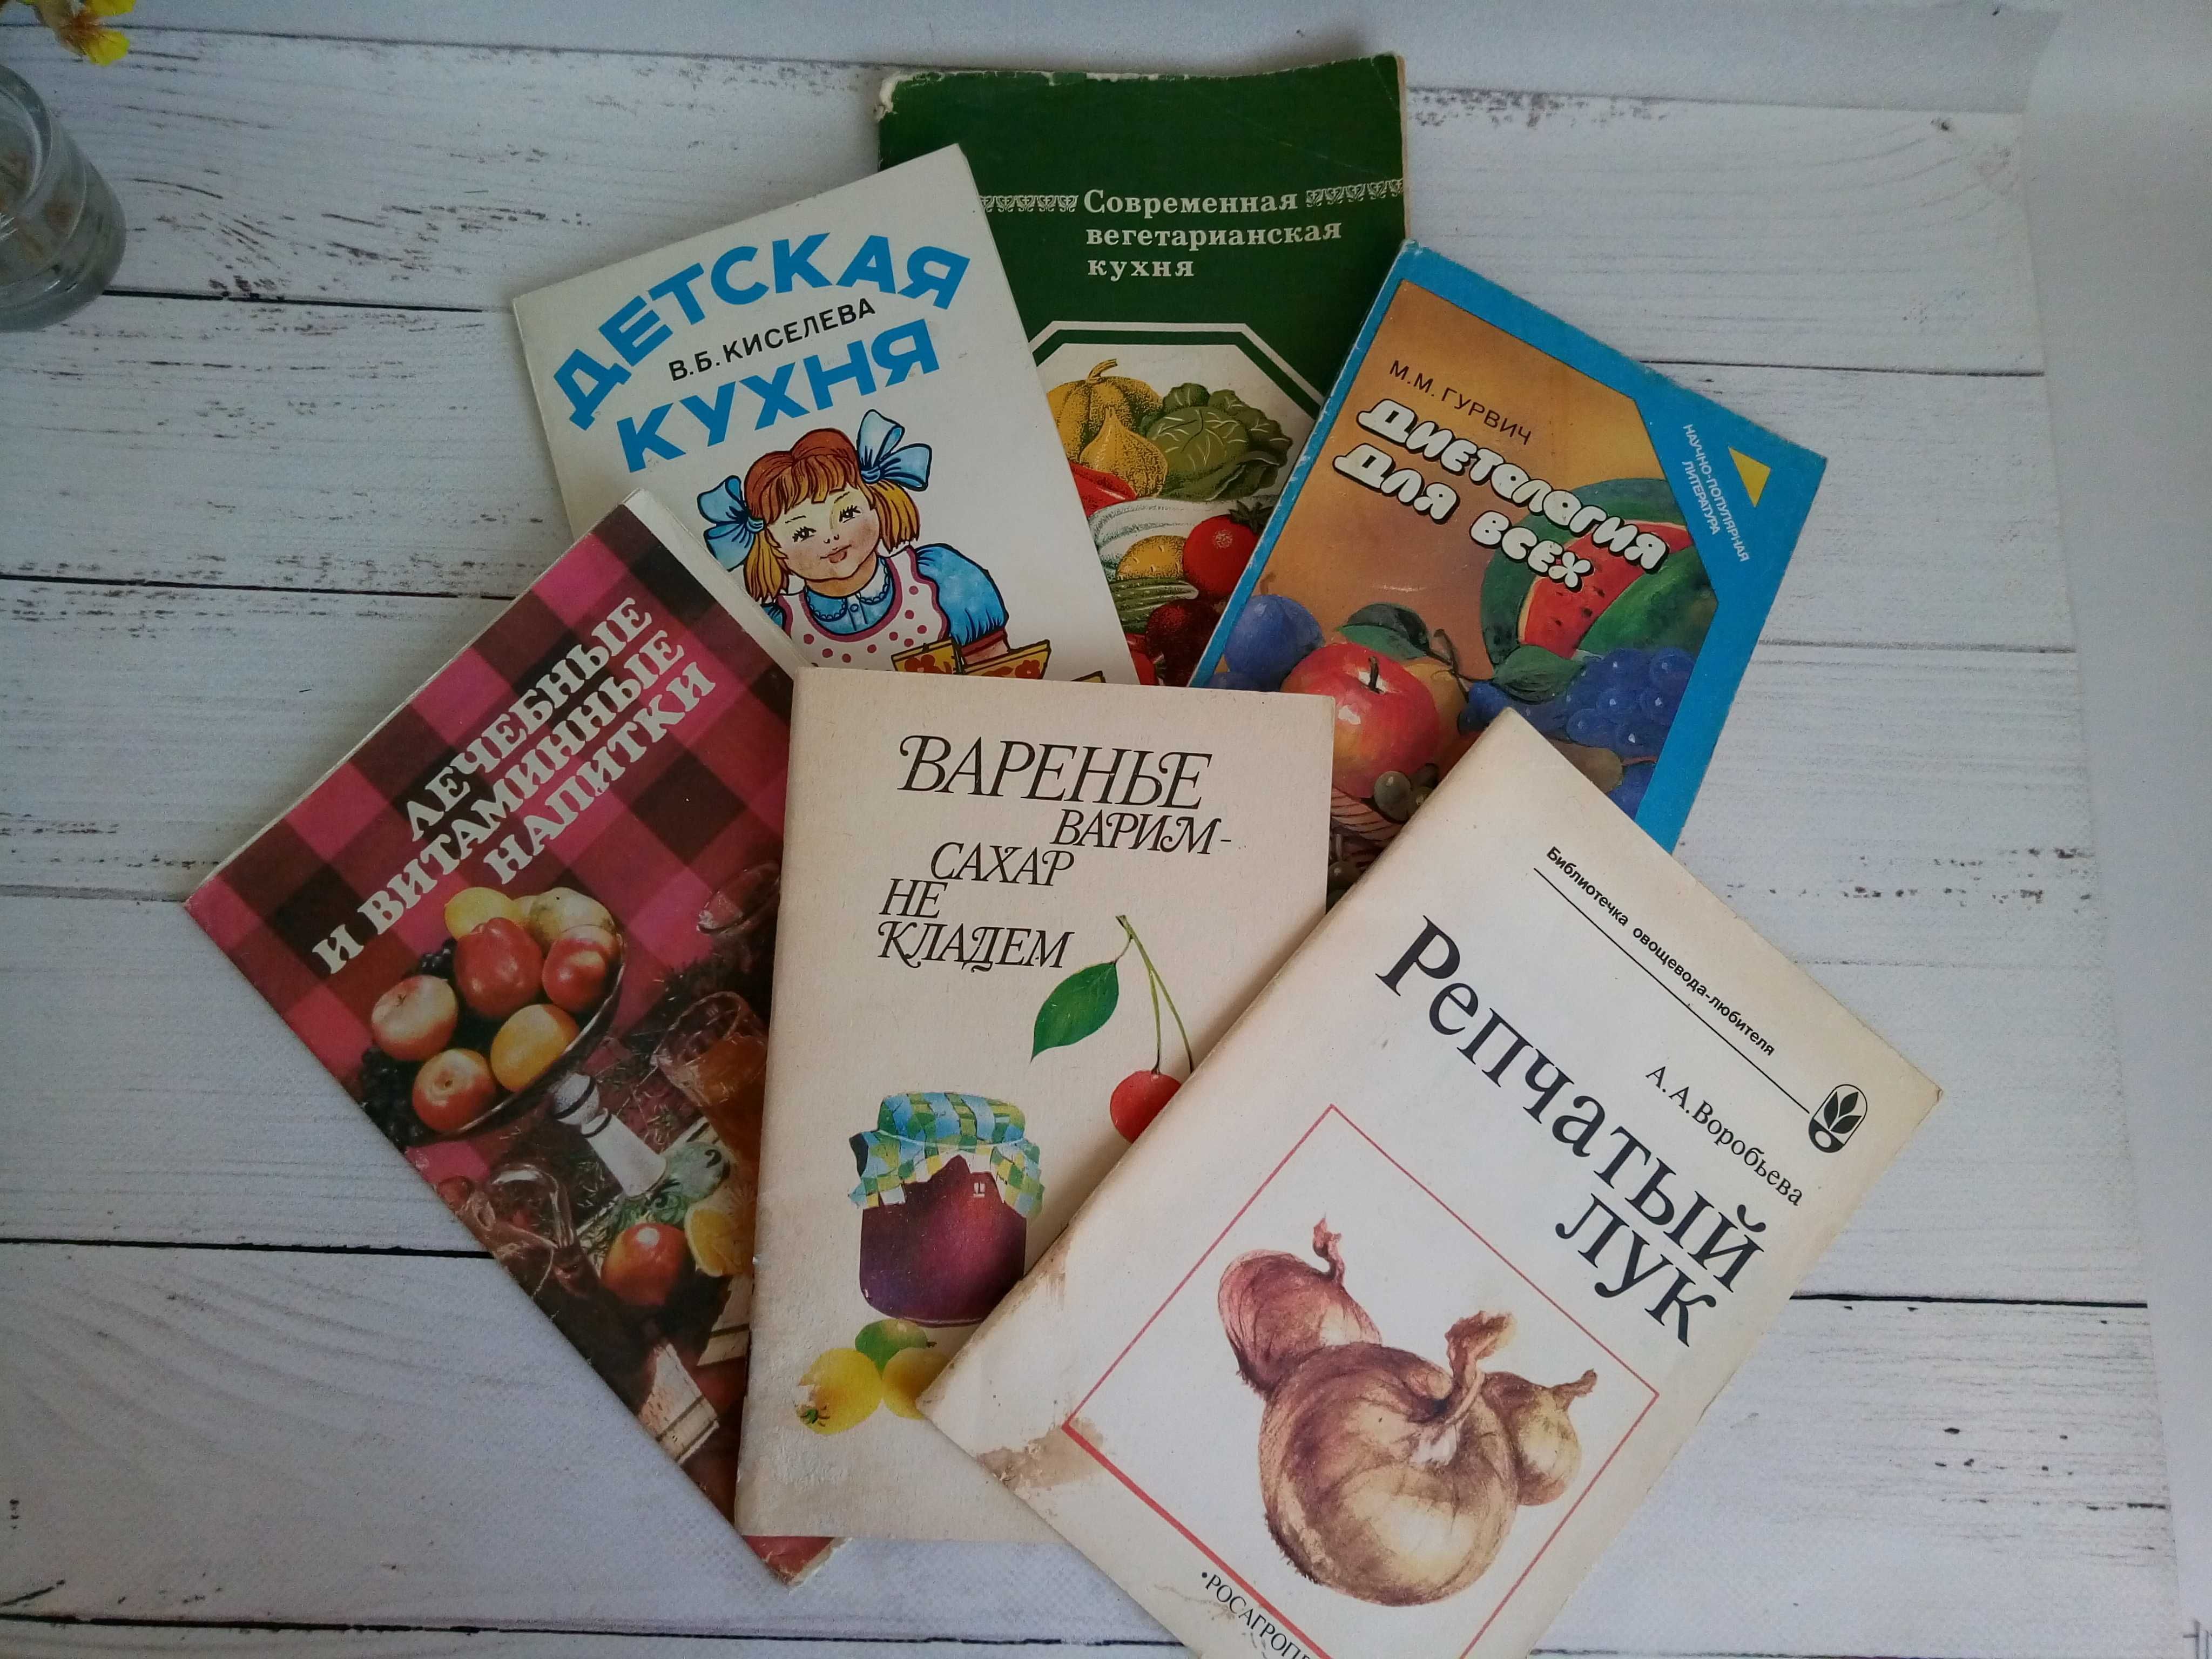 Книги - детская кухня, диетология, варение без сахара и другое